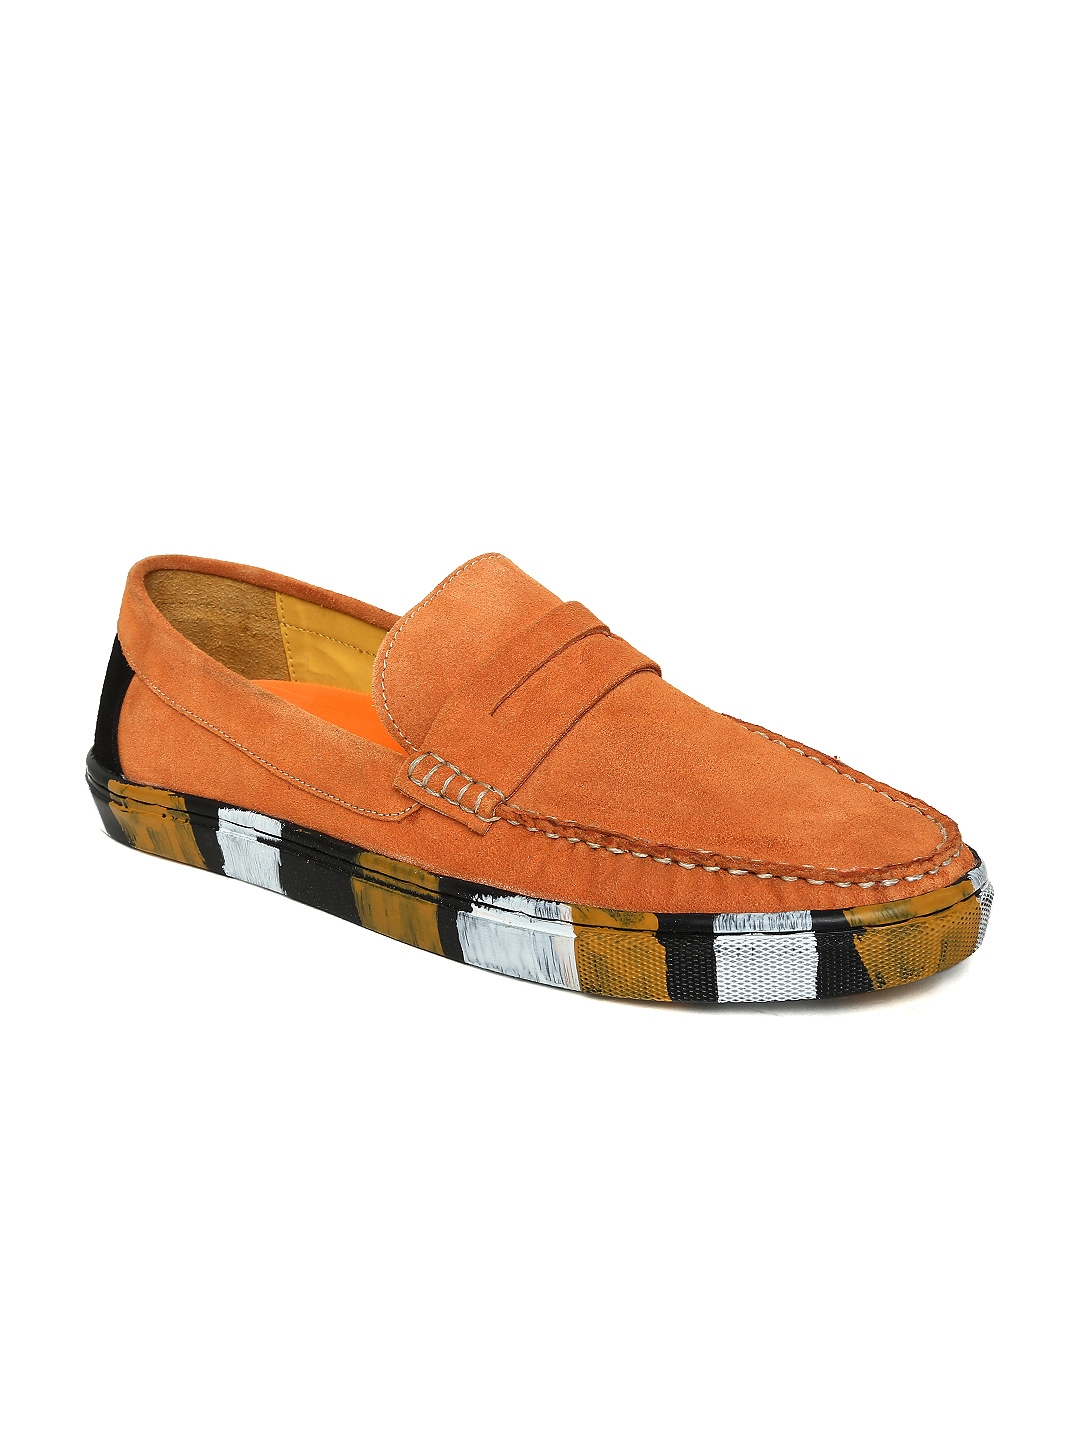 orange loafers for men